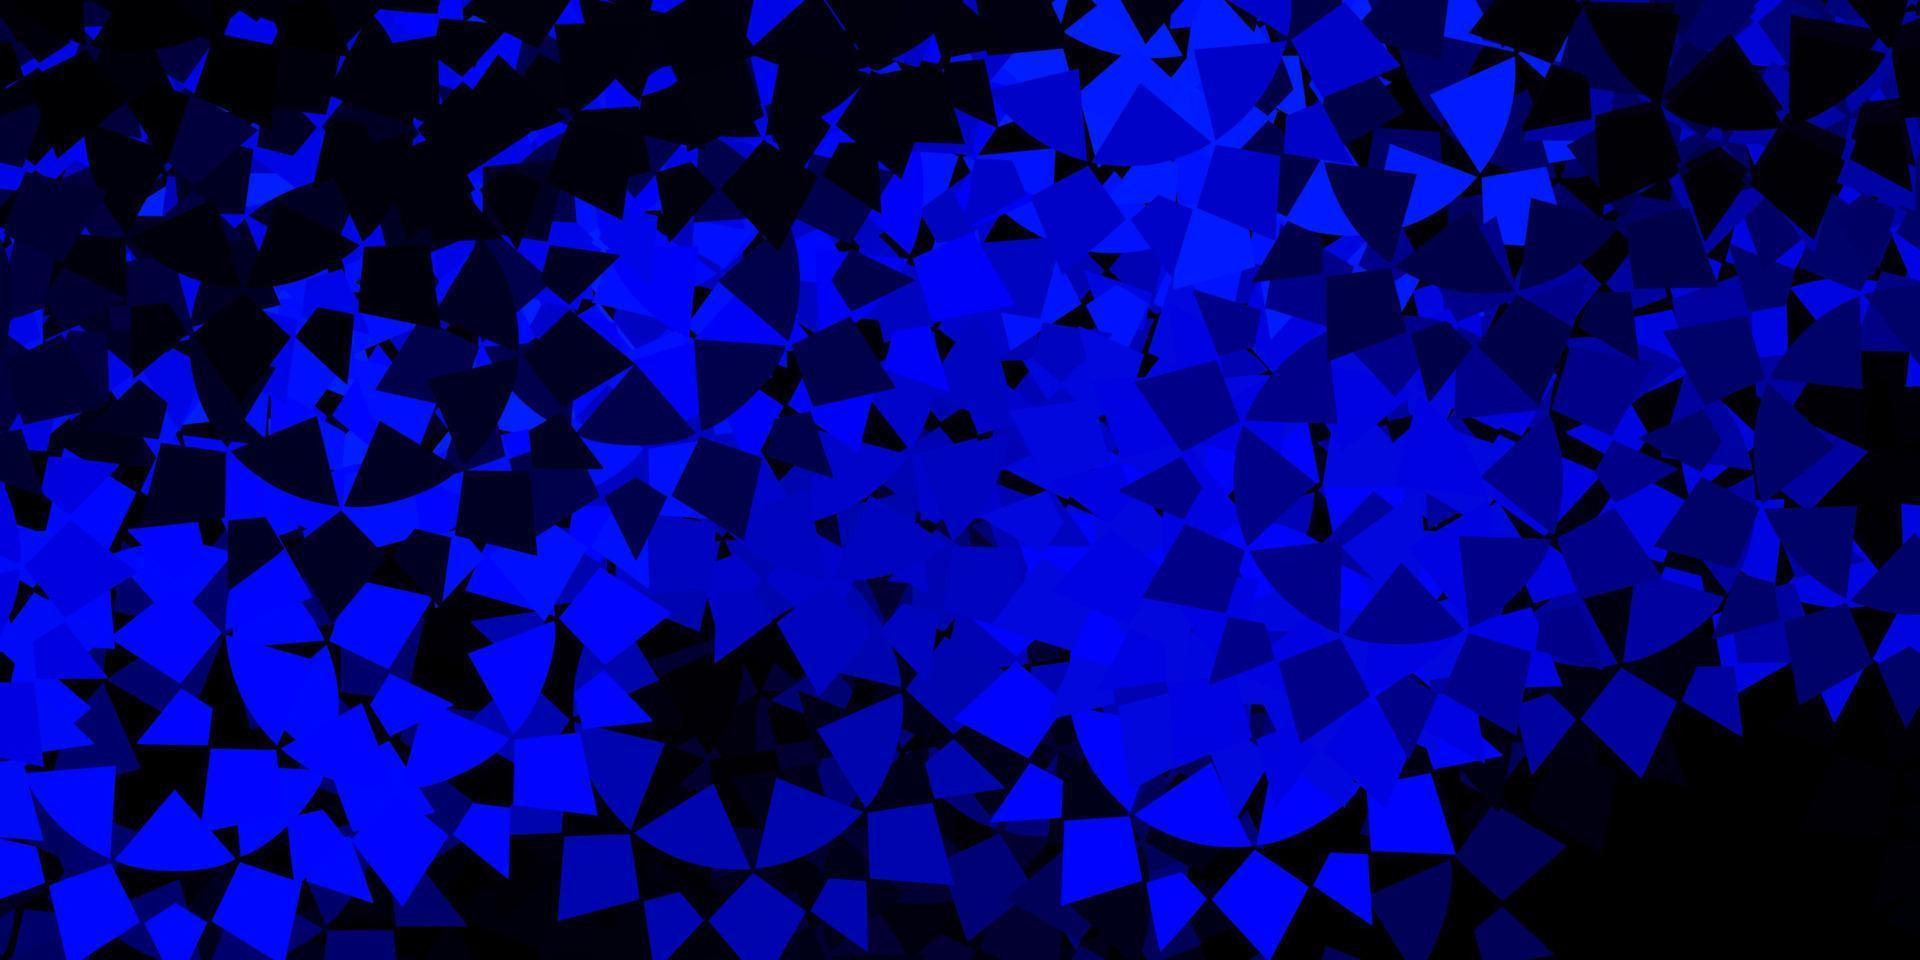 pano de fundo vector azul escuro com triângulos, linhas.